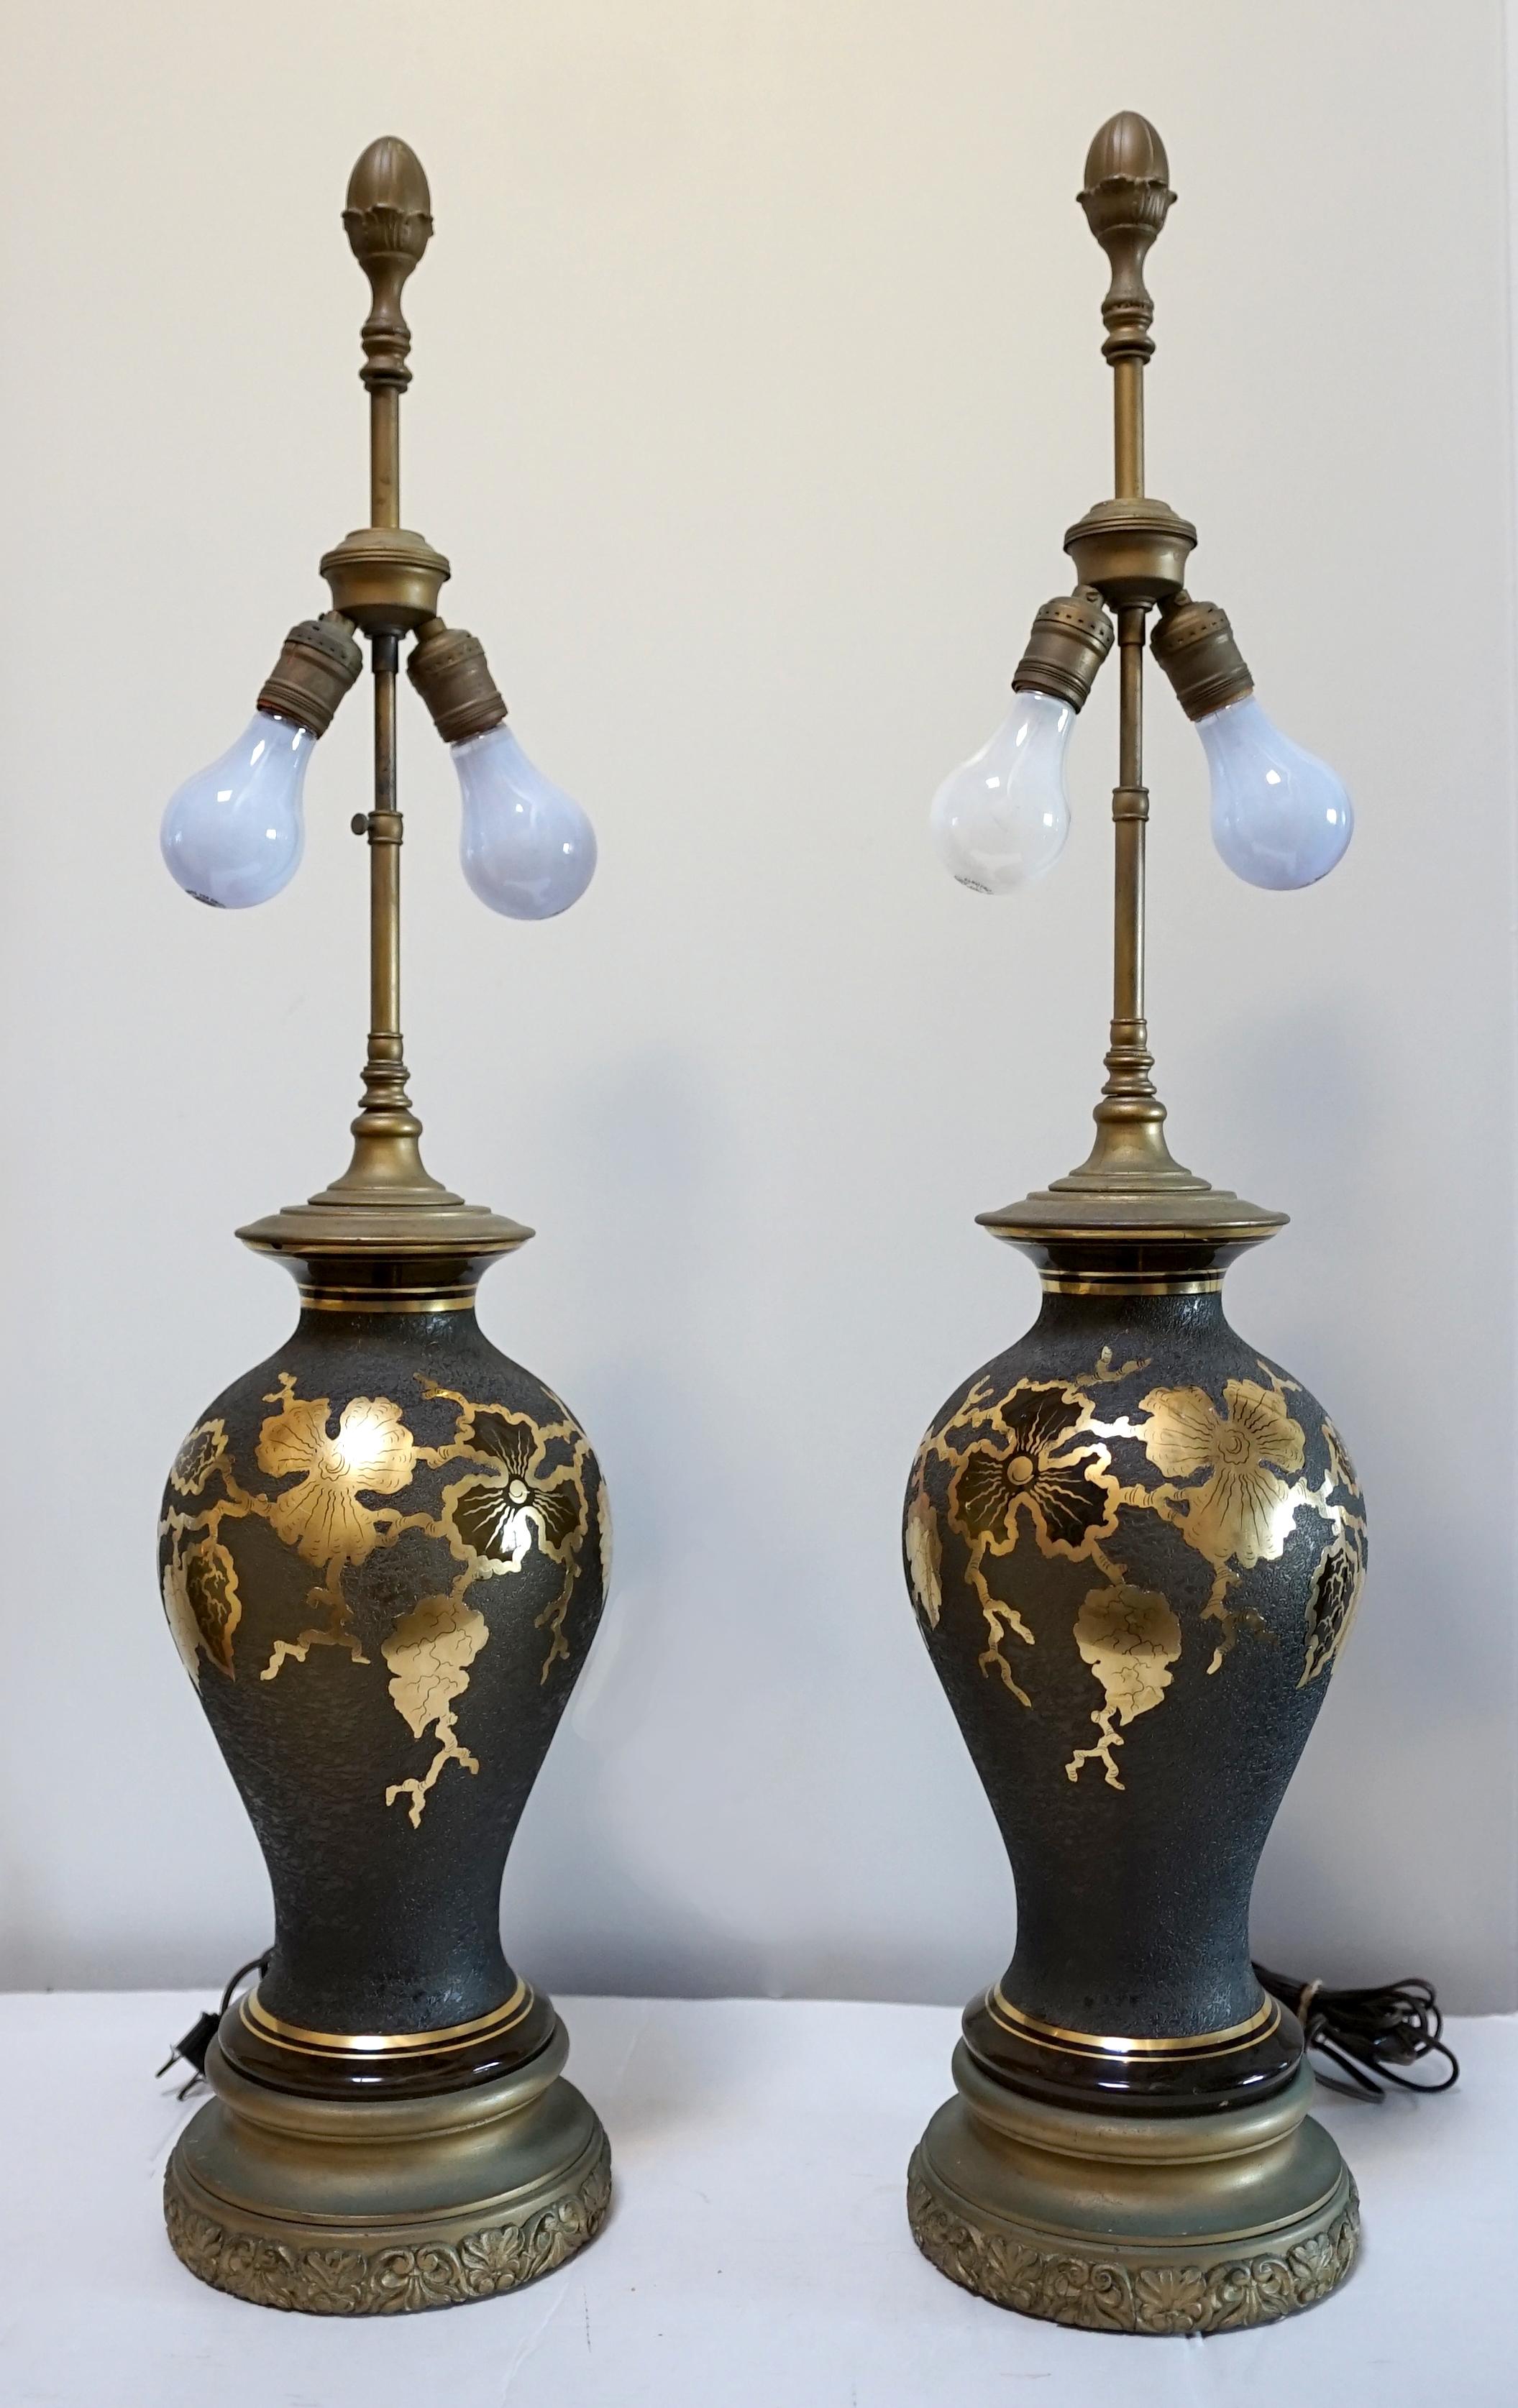 Paire de lampes de table en verre peint en faux laque de style japonais vintage
milieu ou troisième quart du 20e siècle et stupéfiant.
De section circulaire et de forme balustre, avec des sommets évasés, décorés de feuilles d'or stylisées sur fond